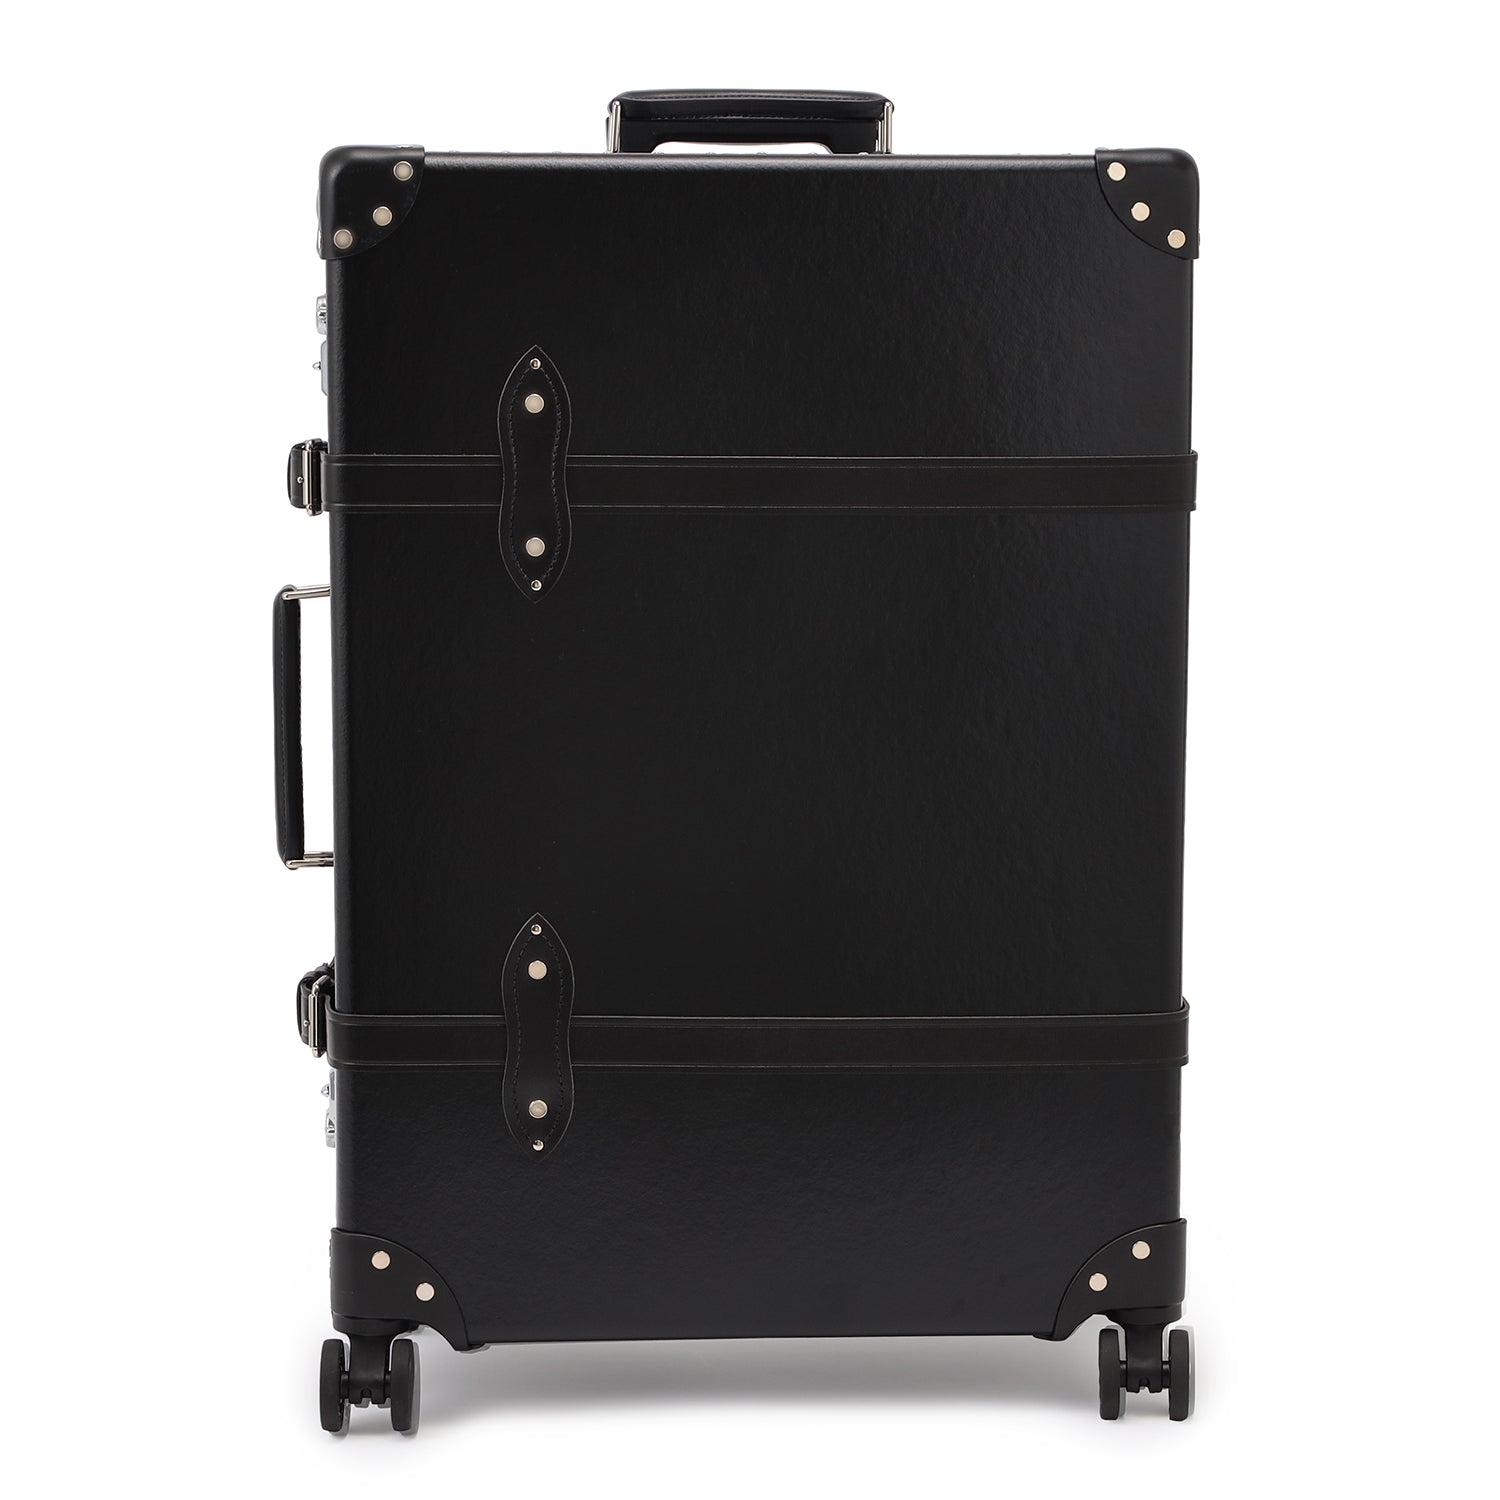 センテナリー ラージチェックイン 4輪 スーツケース ブラック | グローブ・トロッター (Globe-Trotter) 日本公式